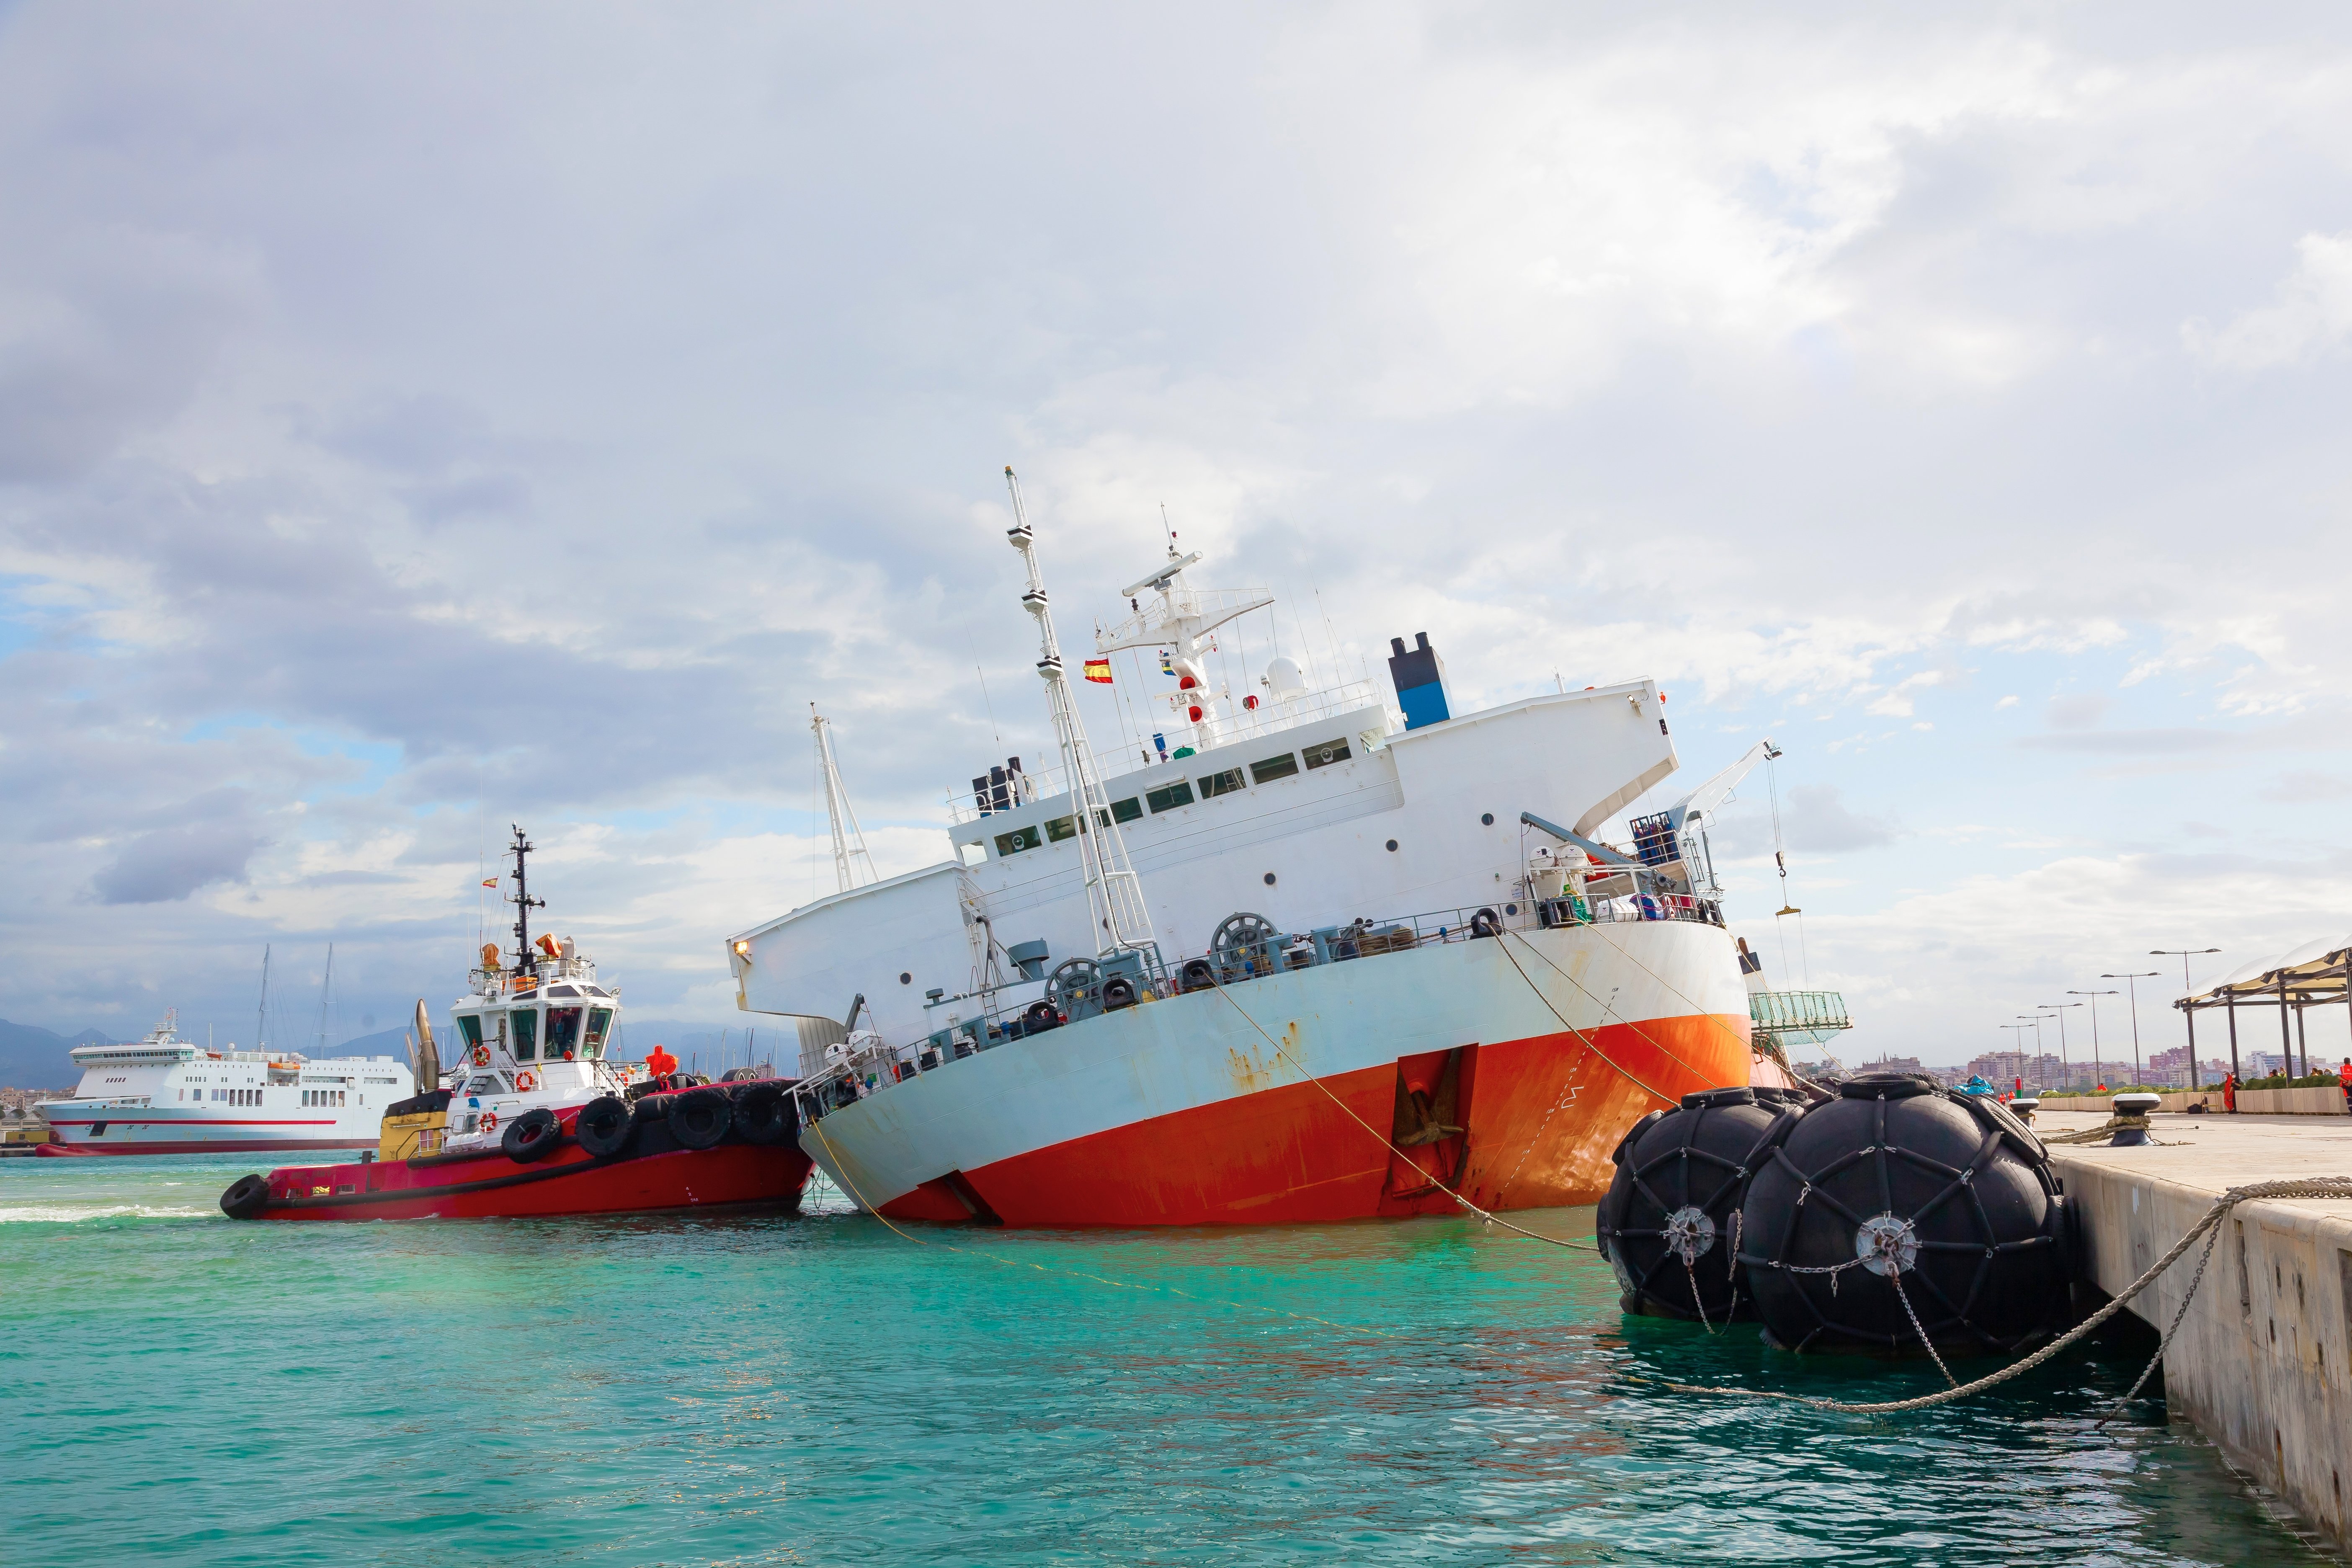 Simulazione dei crash test nel settore navale: Innovazione e sicurezza in mare